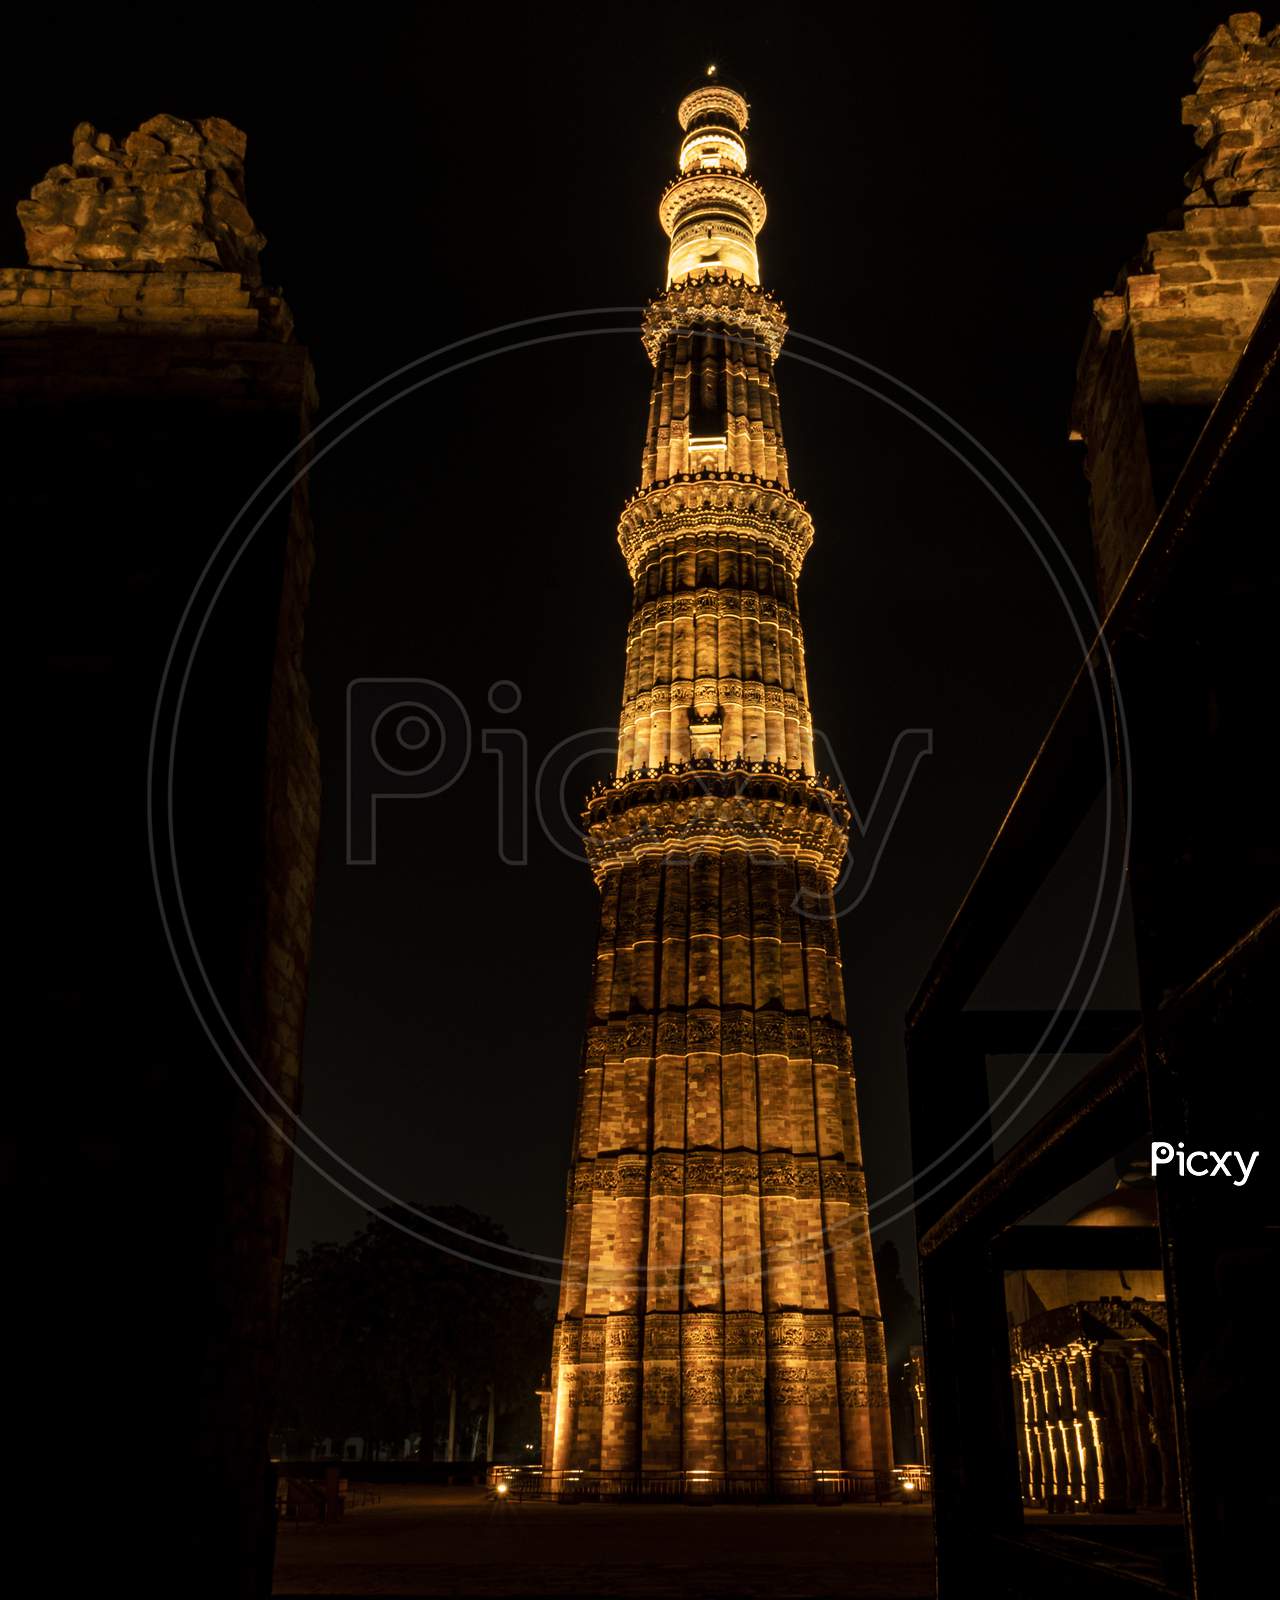 Qutub Minar in Delhi at night